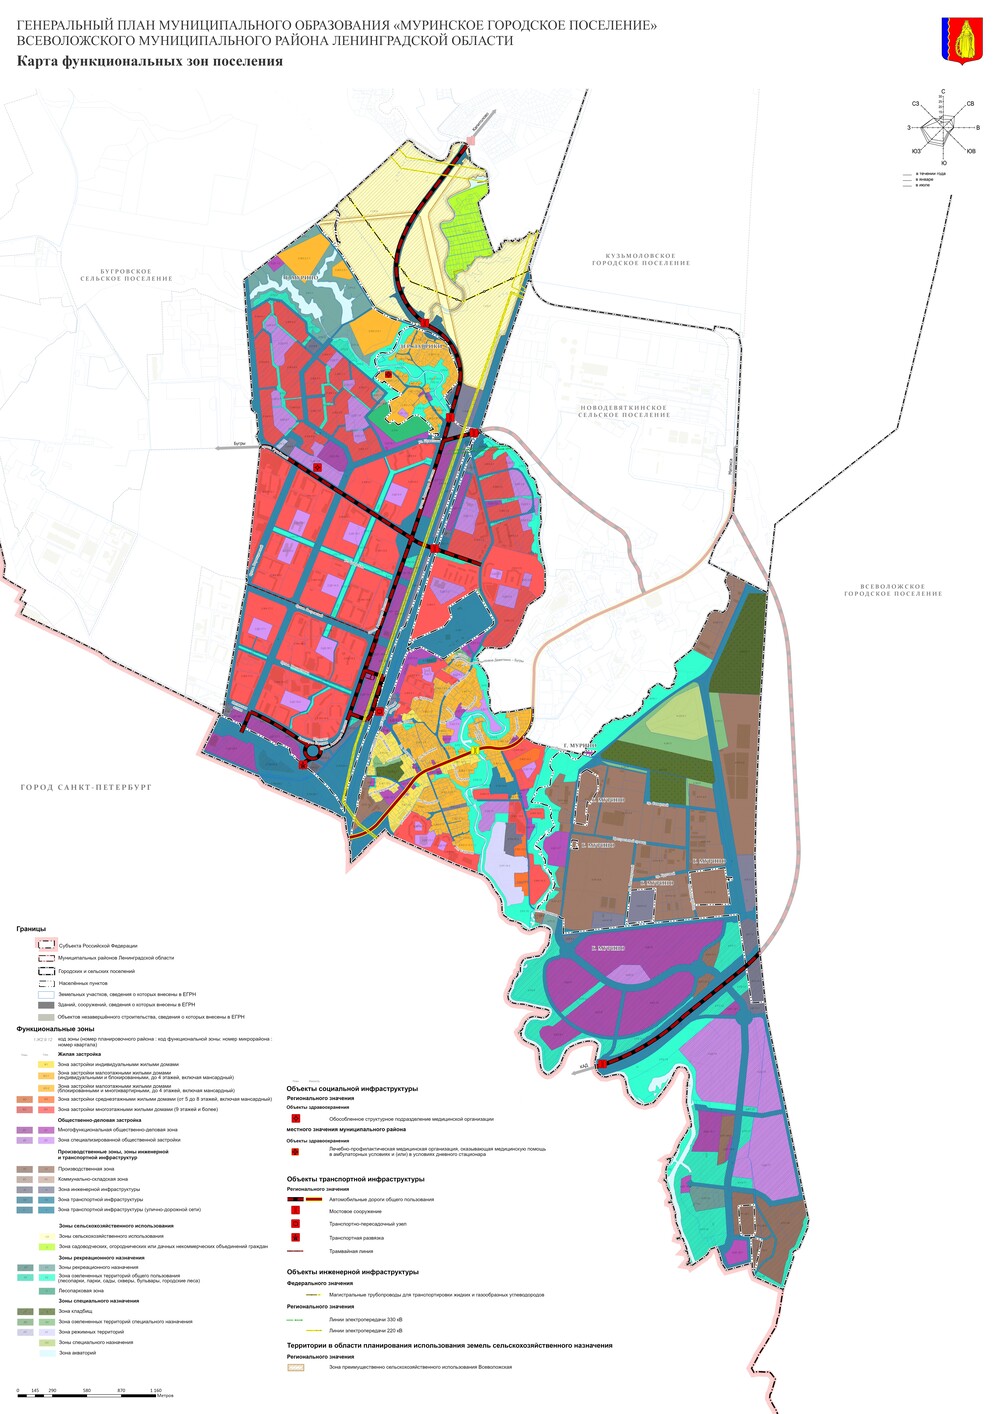 3.Копии карт функциональных зон поселения или городского округа в растровом формате